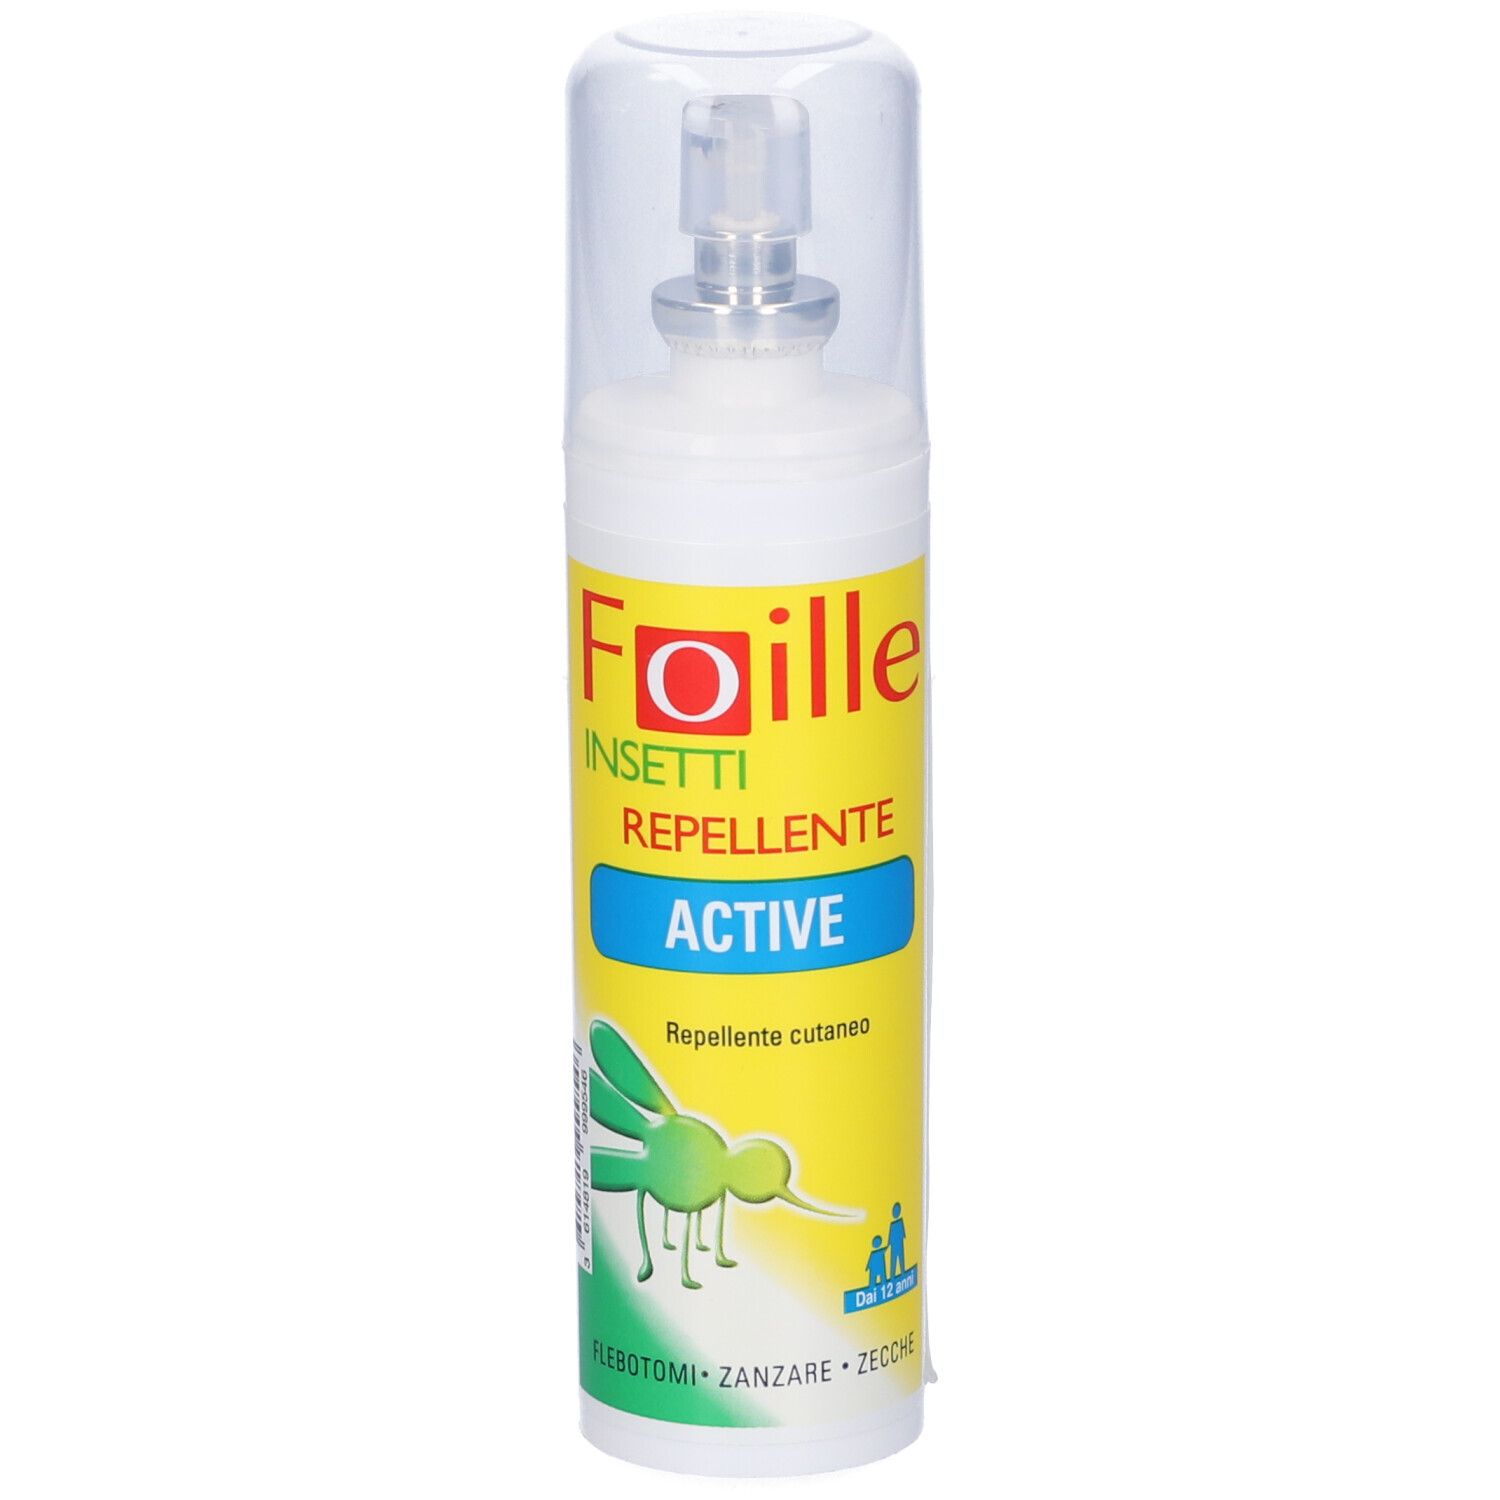 Foille Insetti Repellente Active